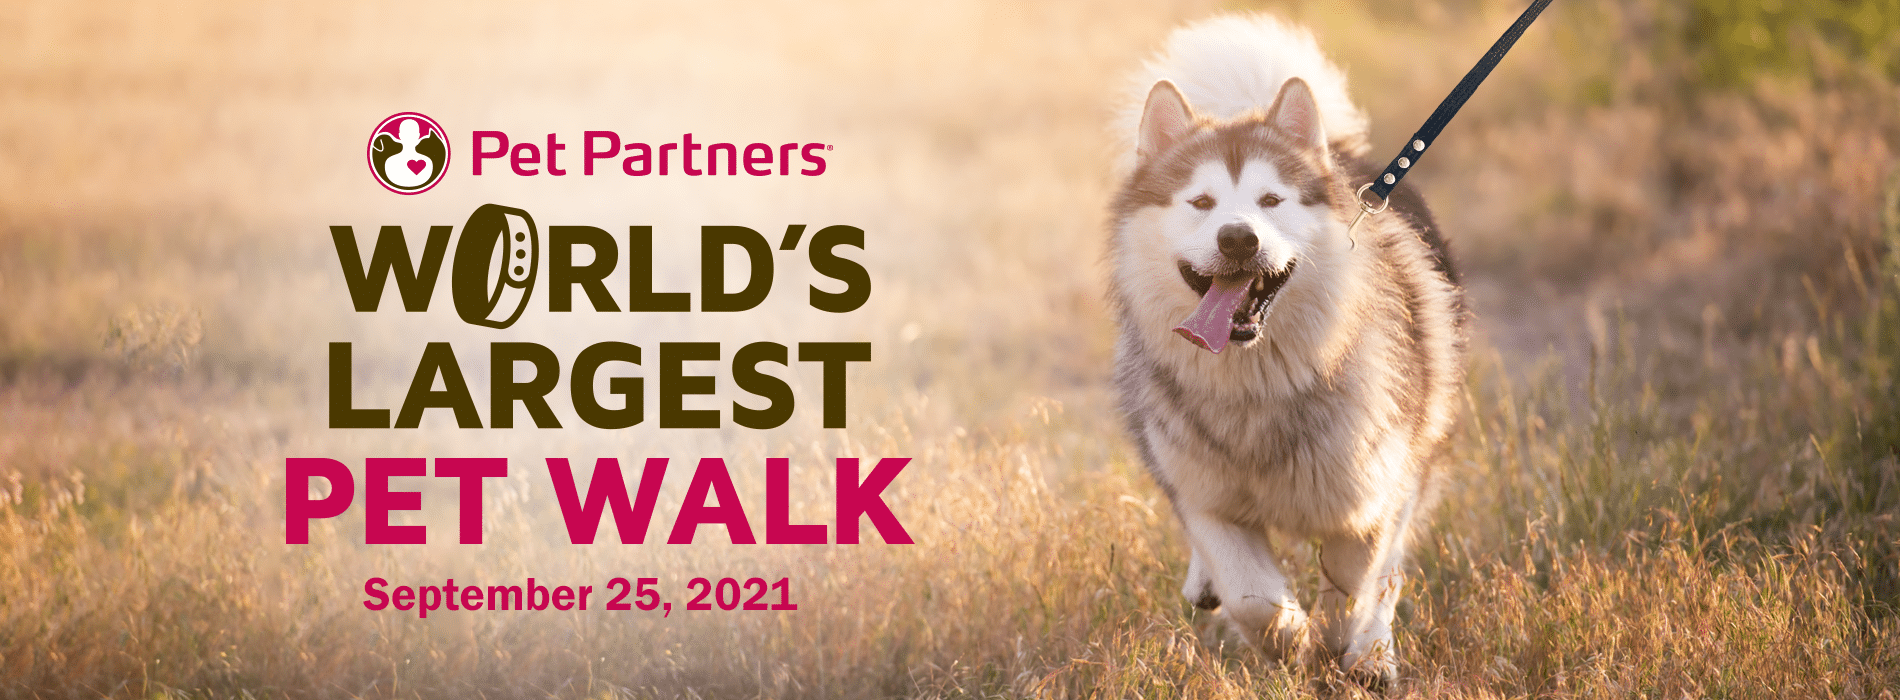 Worlds Largest Pet Walk | Pet Partners